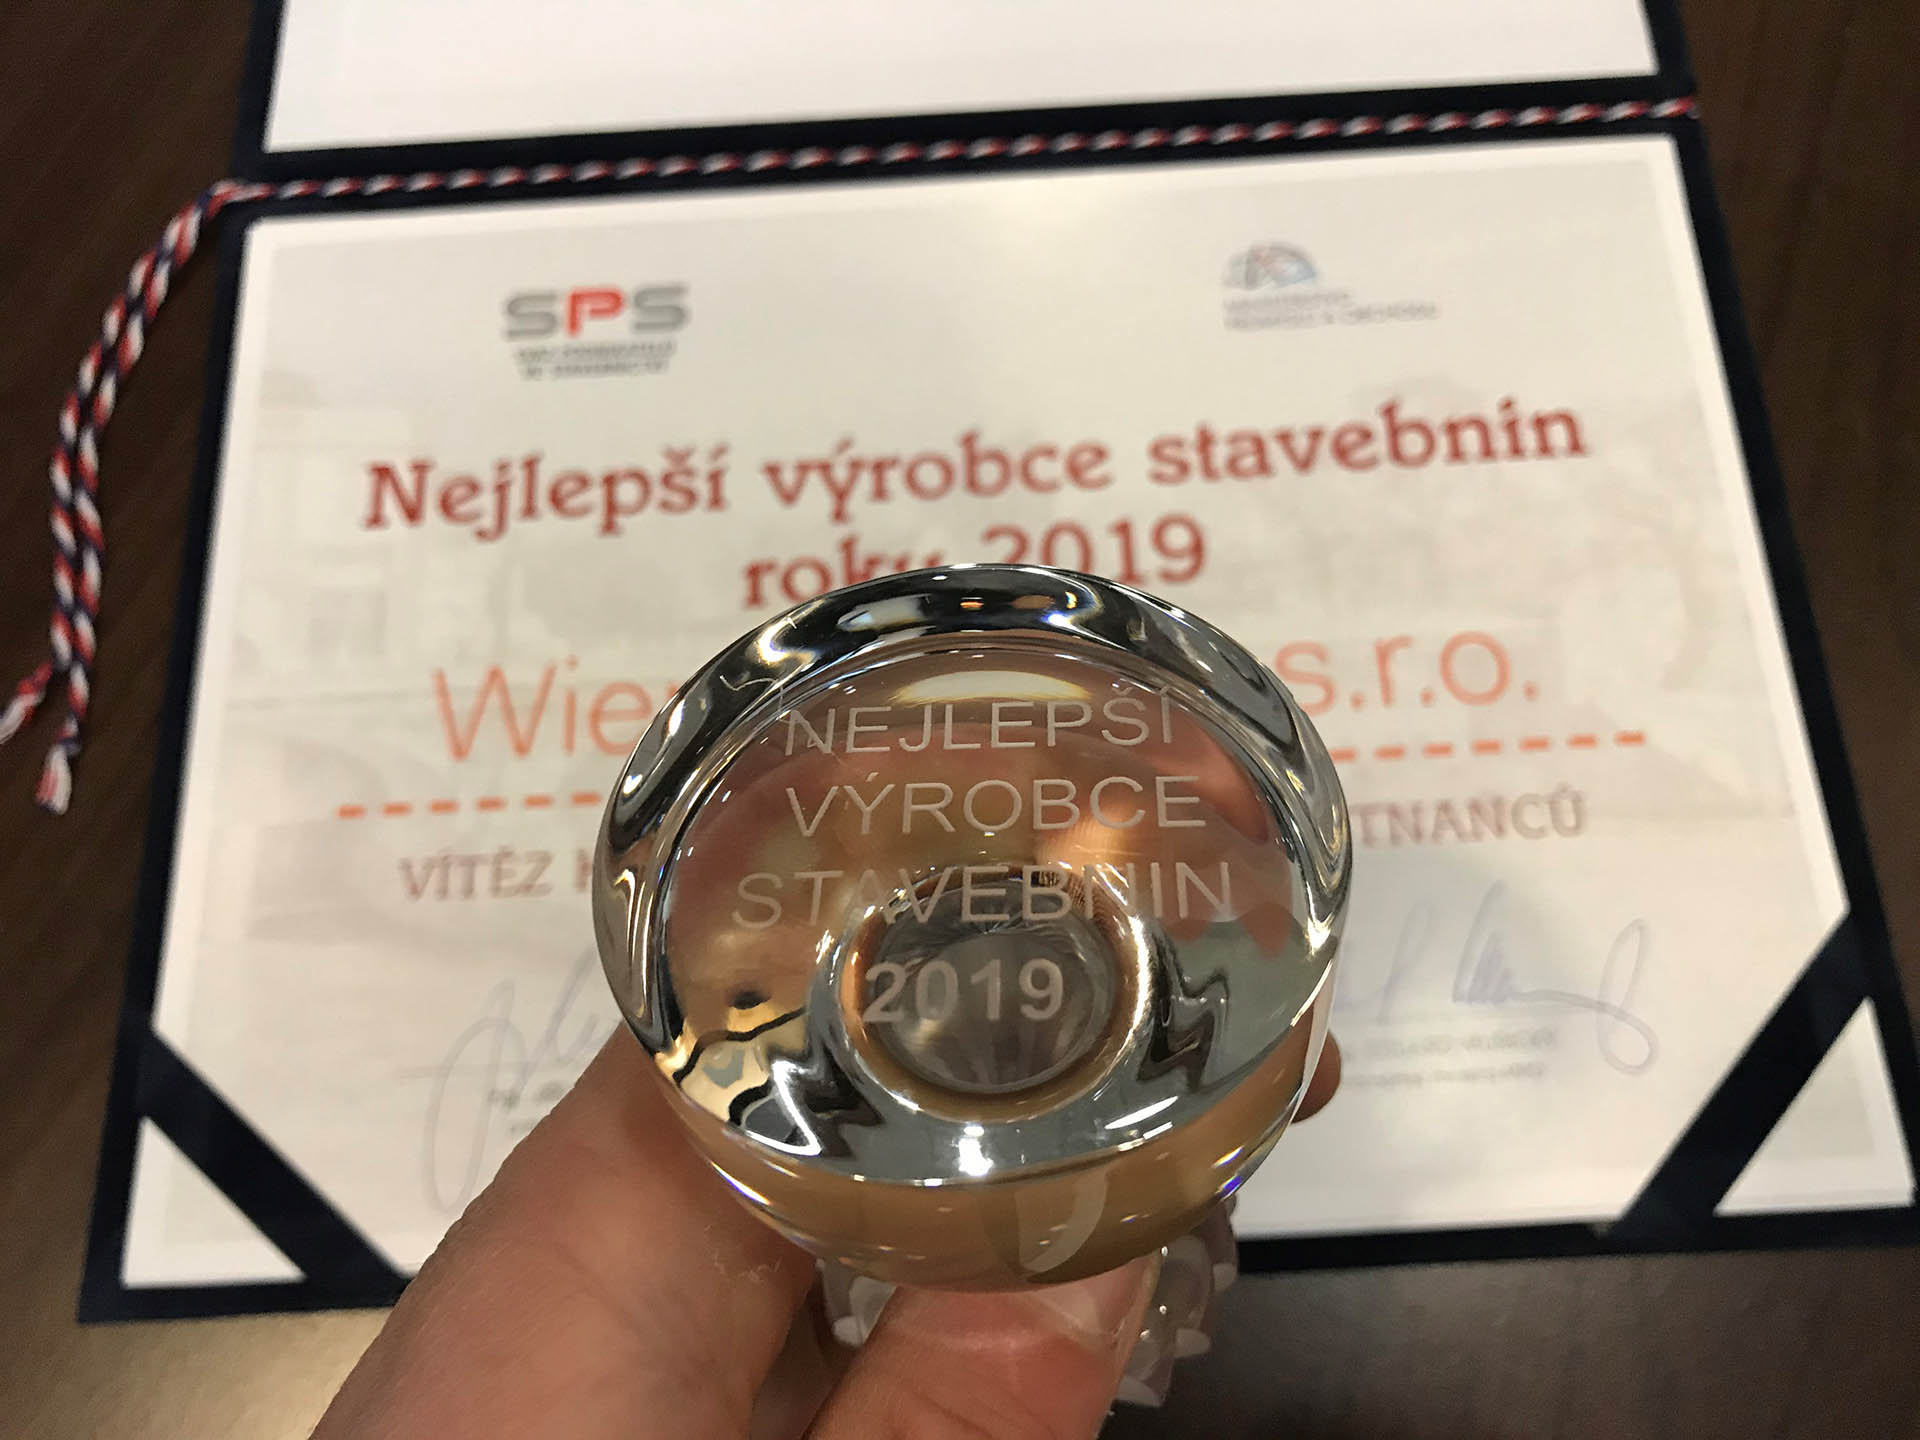 Dvě ocenění pro Wienerberger: nejlepší výrobce stavebnin 2019 a bronzová známka kvality